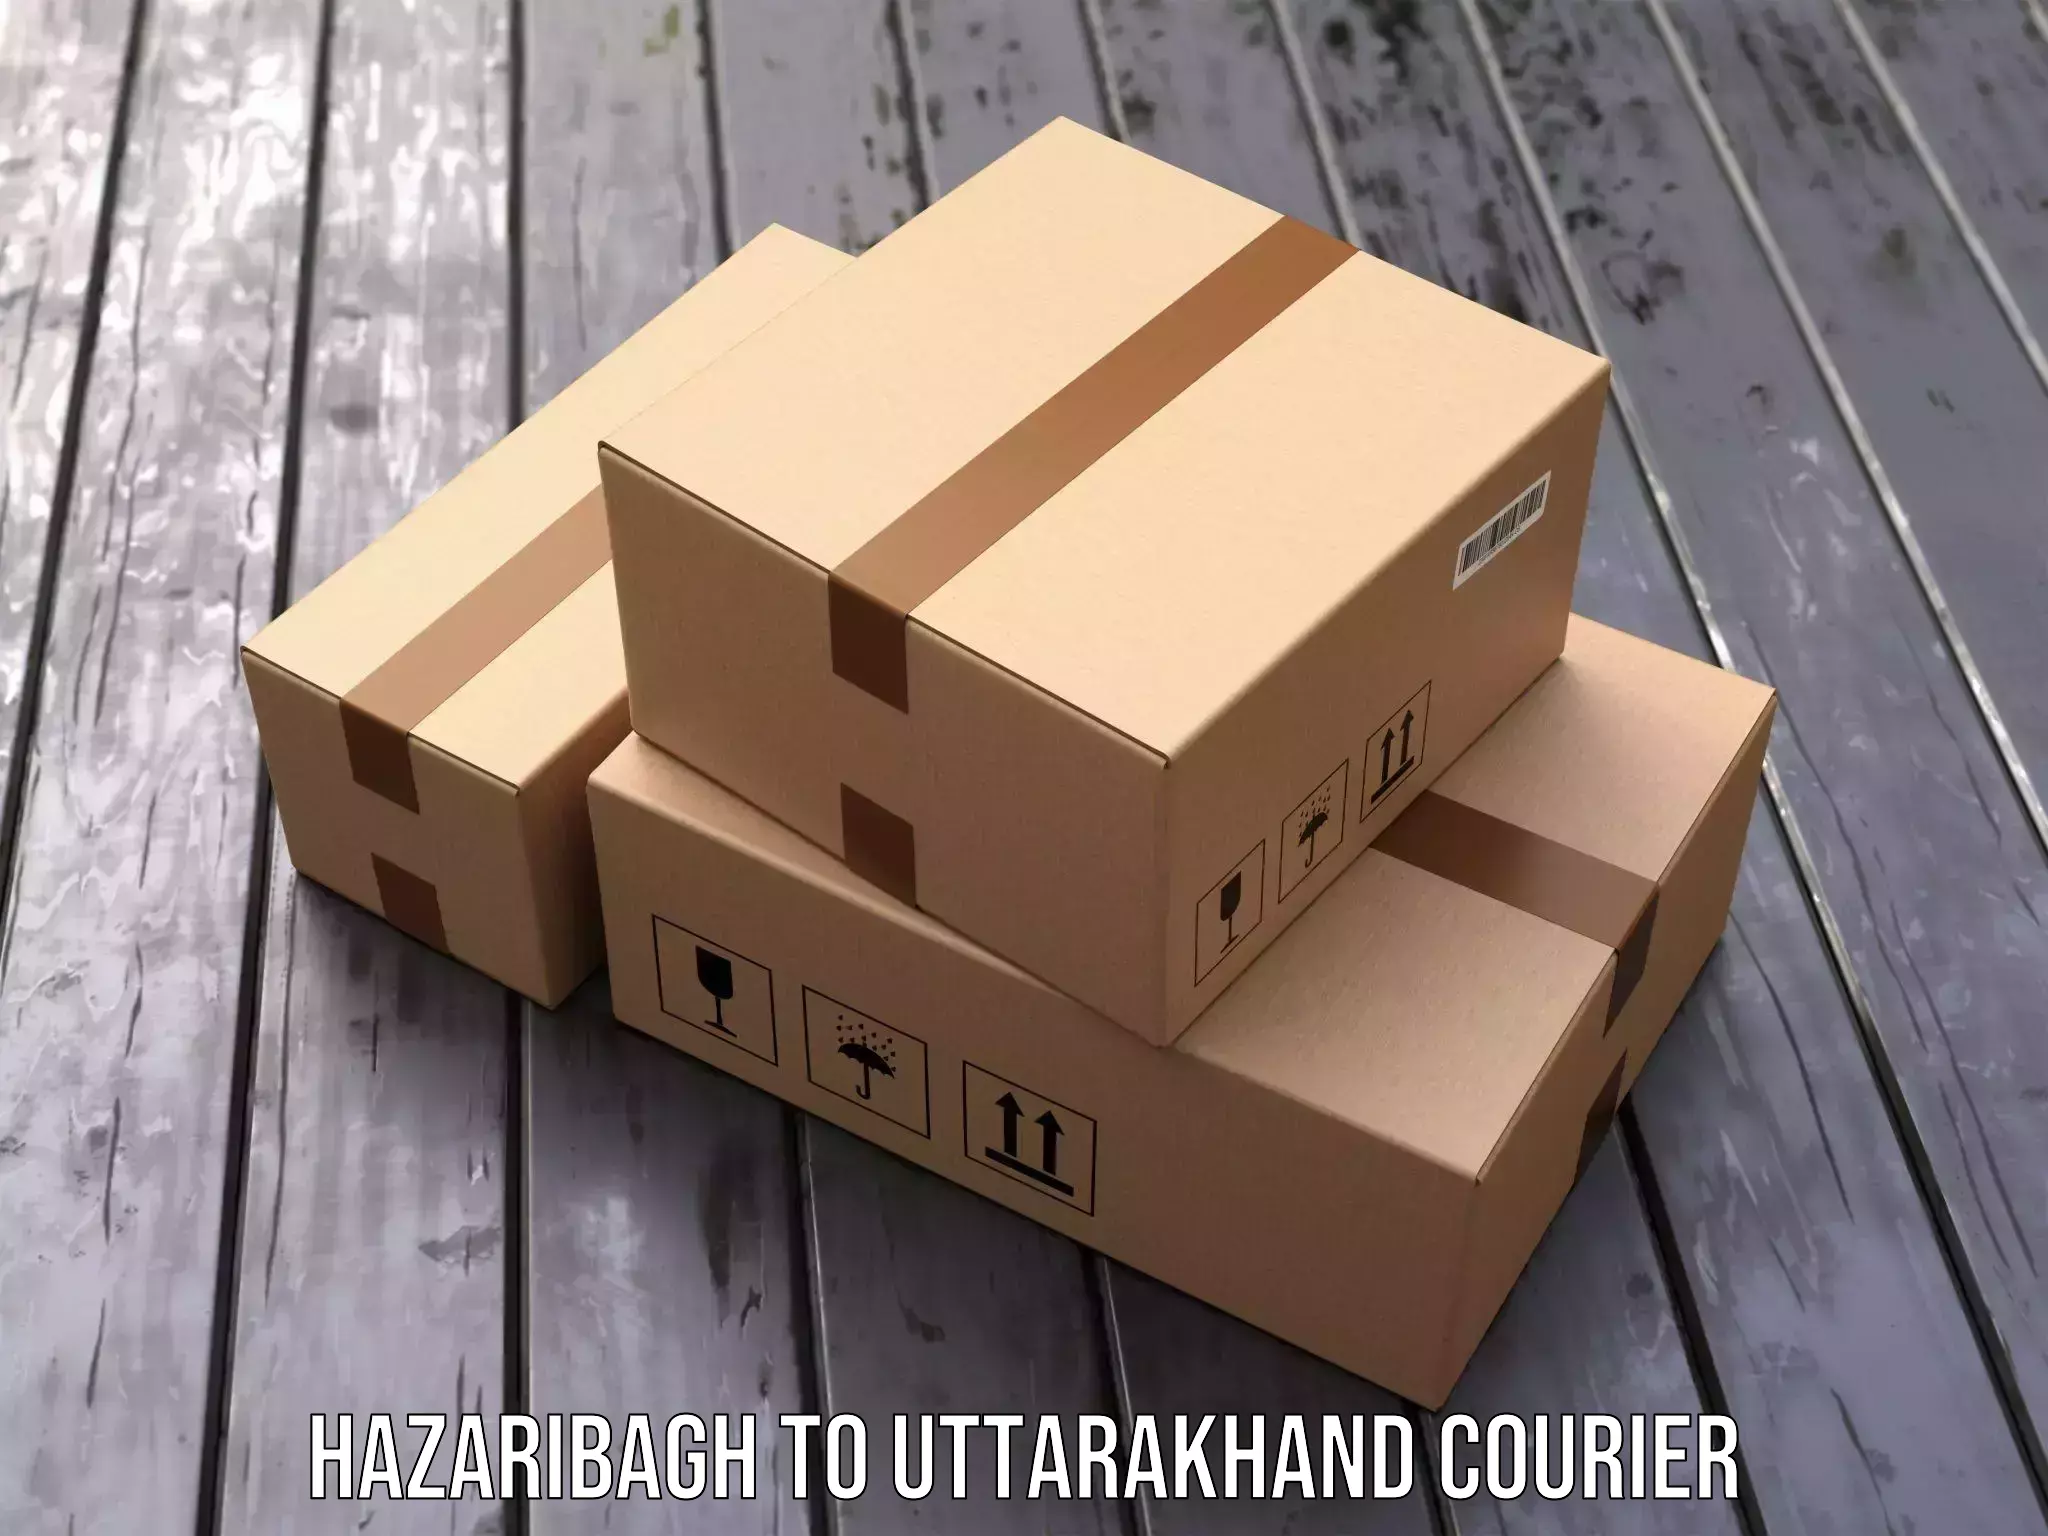 Local delivery service Hazaribagh to Dehradun